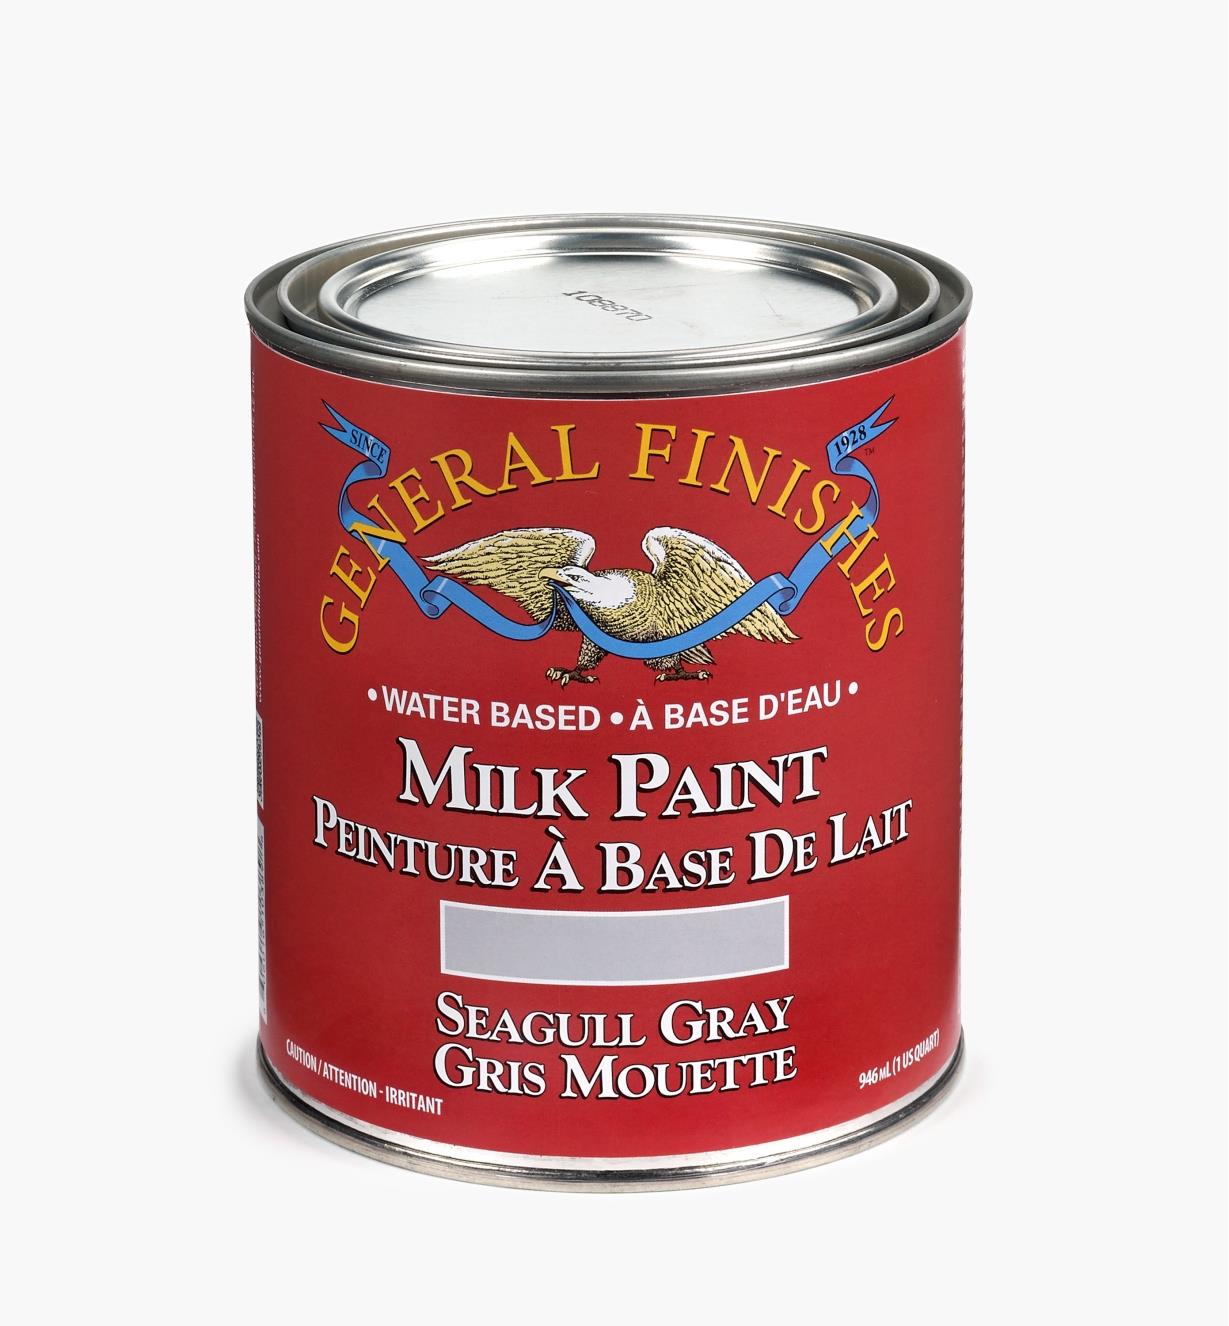 56Z1699 - Peinture de lait General, gris mouette, la pinte